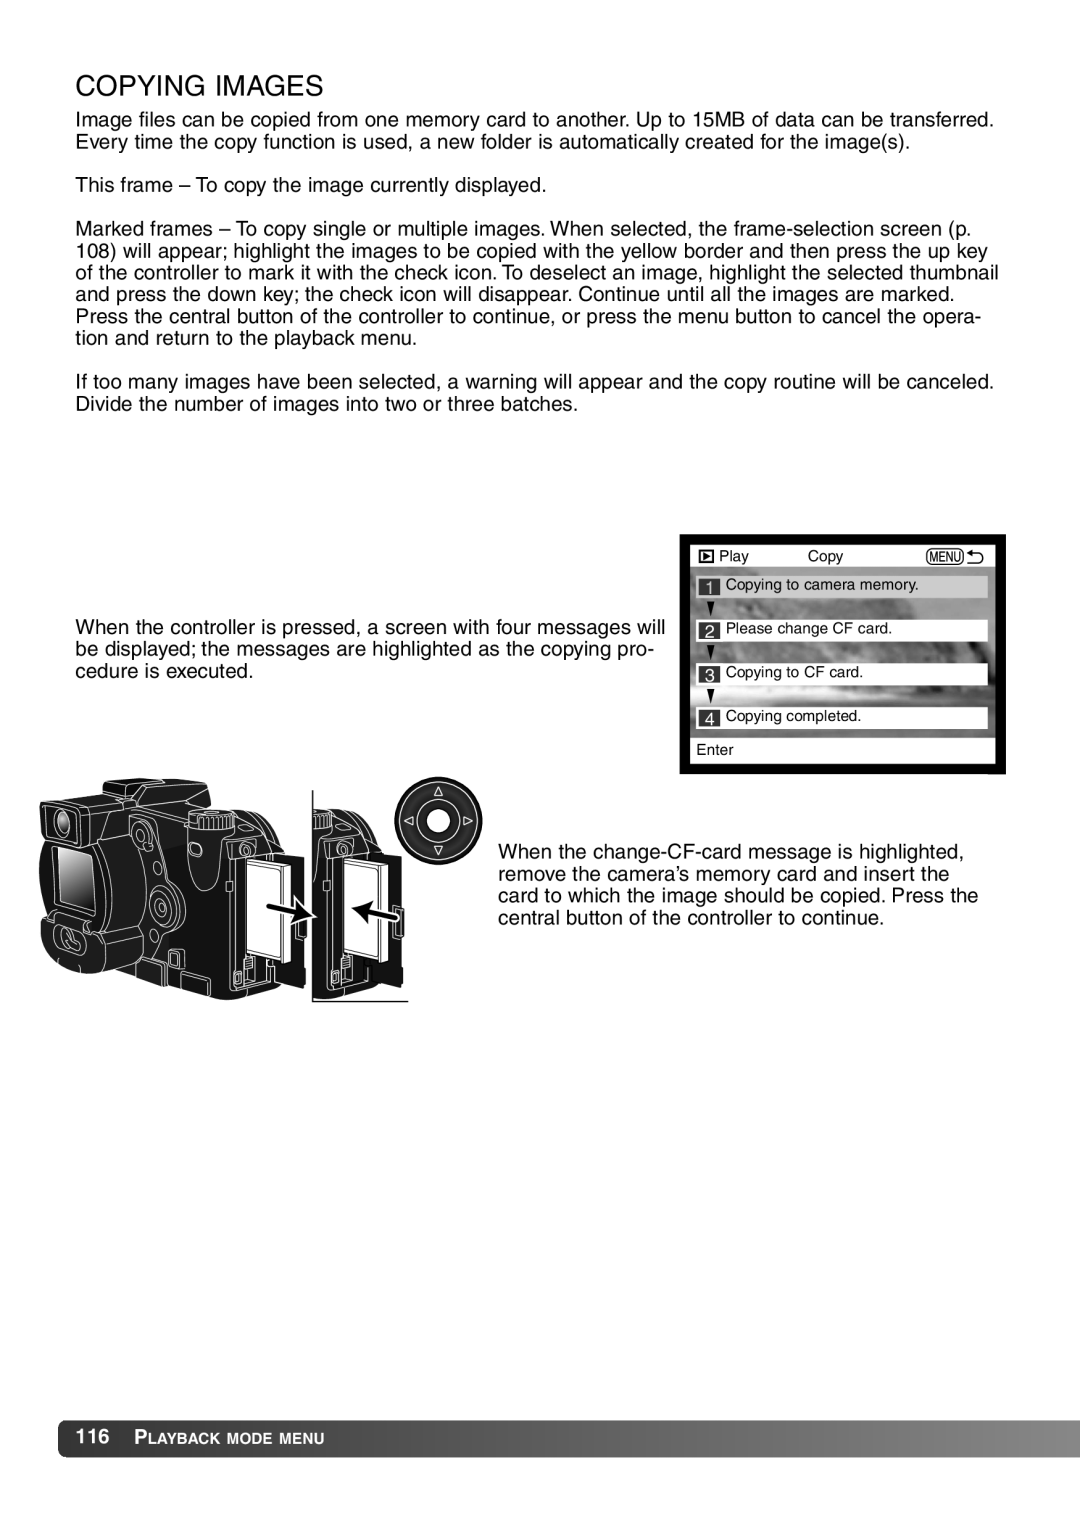 Konica Minolta 7Hi instruction manual Copying Images 